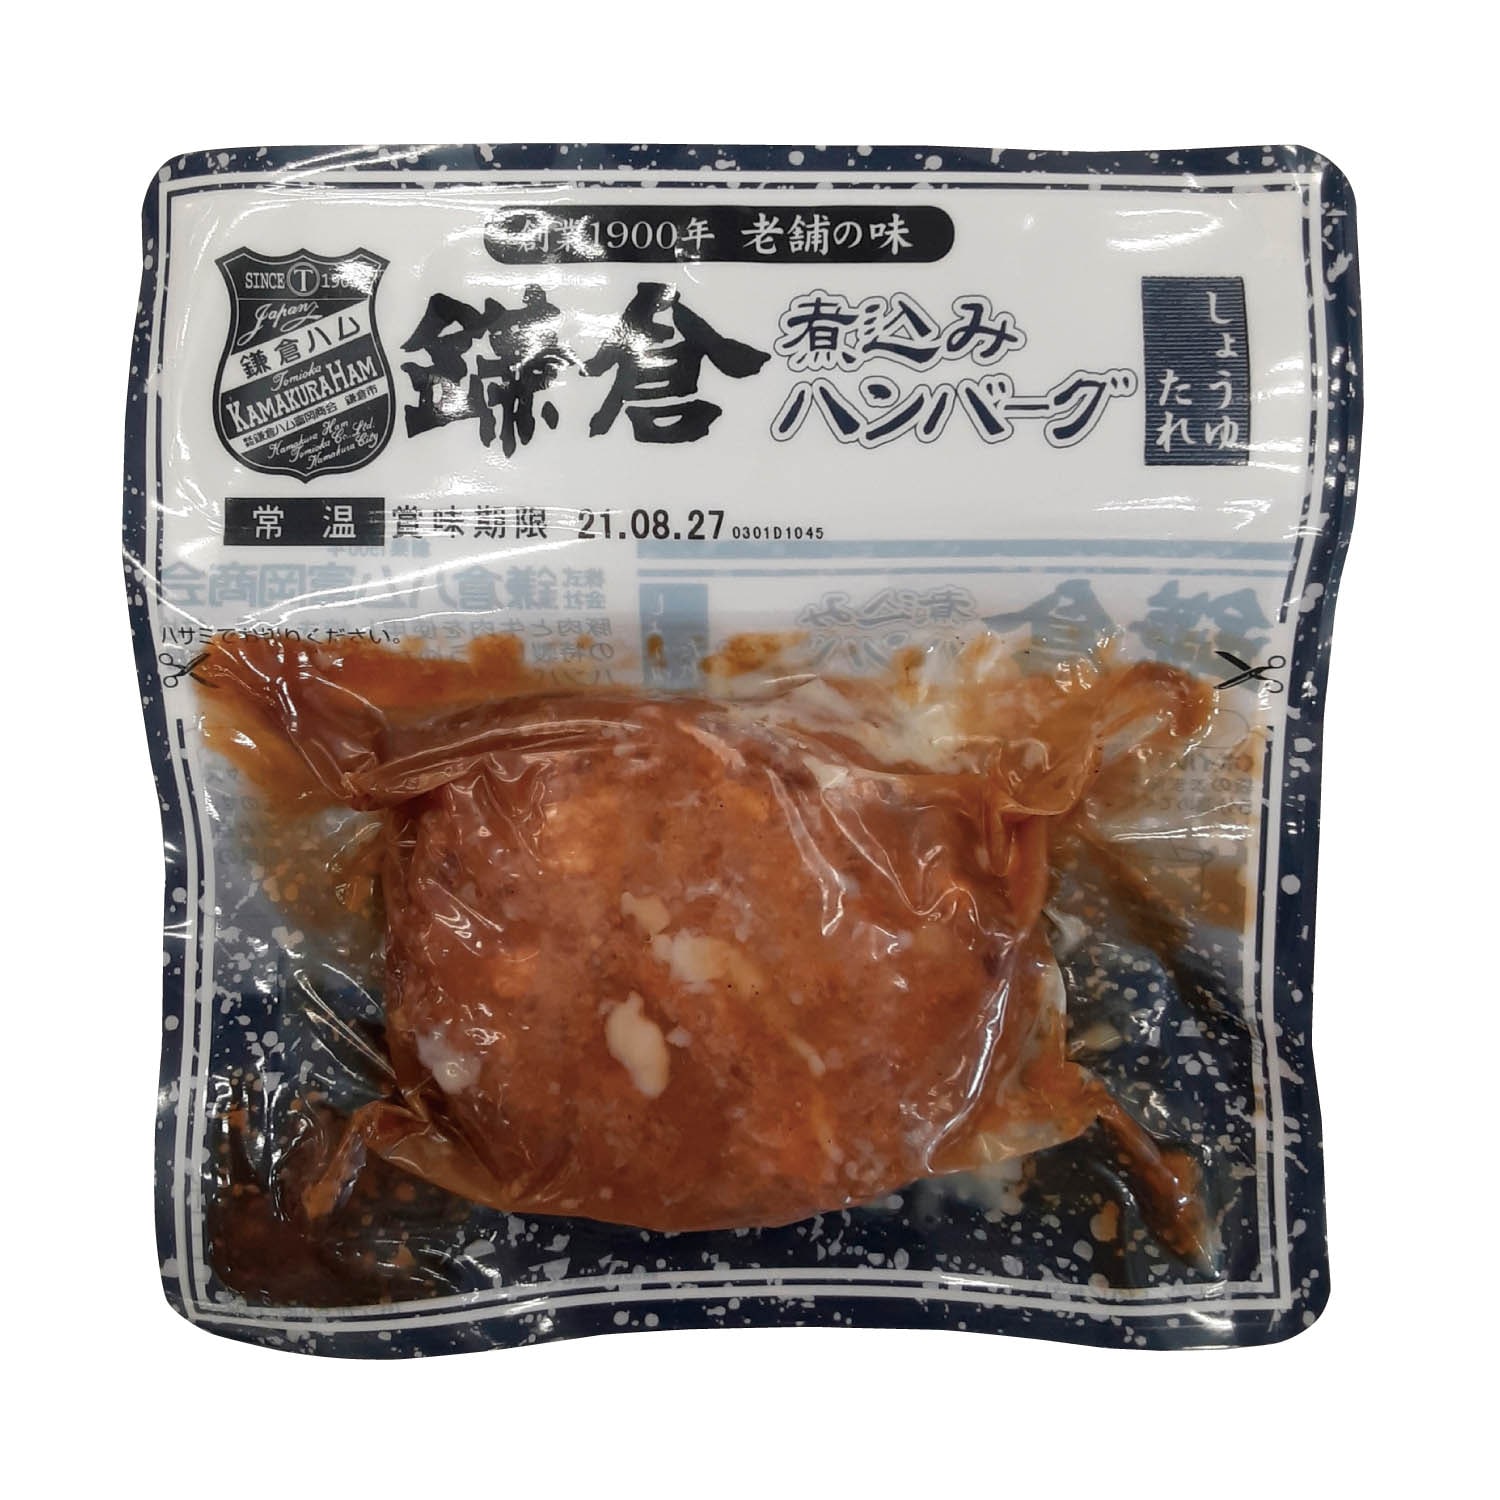 フードロス対策】【20%OFF】 鎌倉煮ハンバーグしょうゆ 120g×10袋